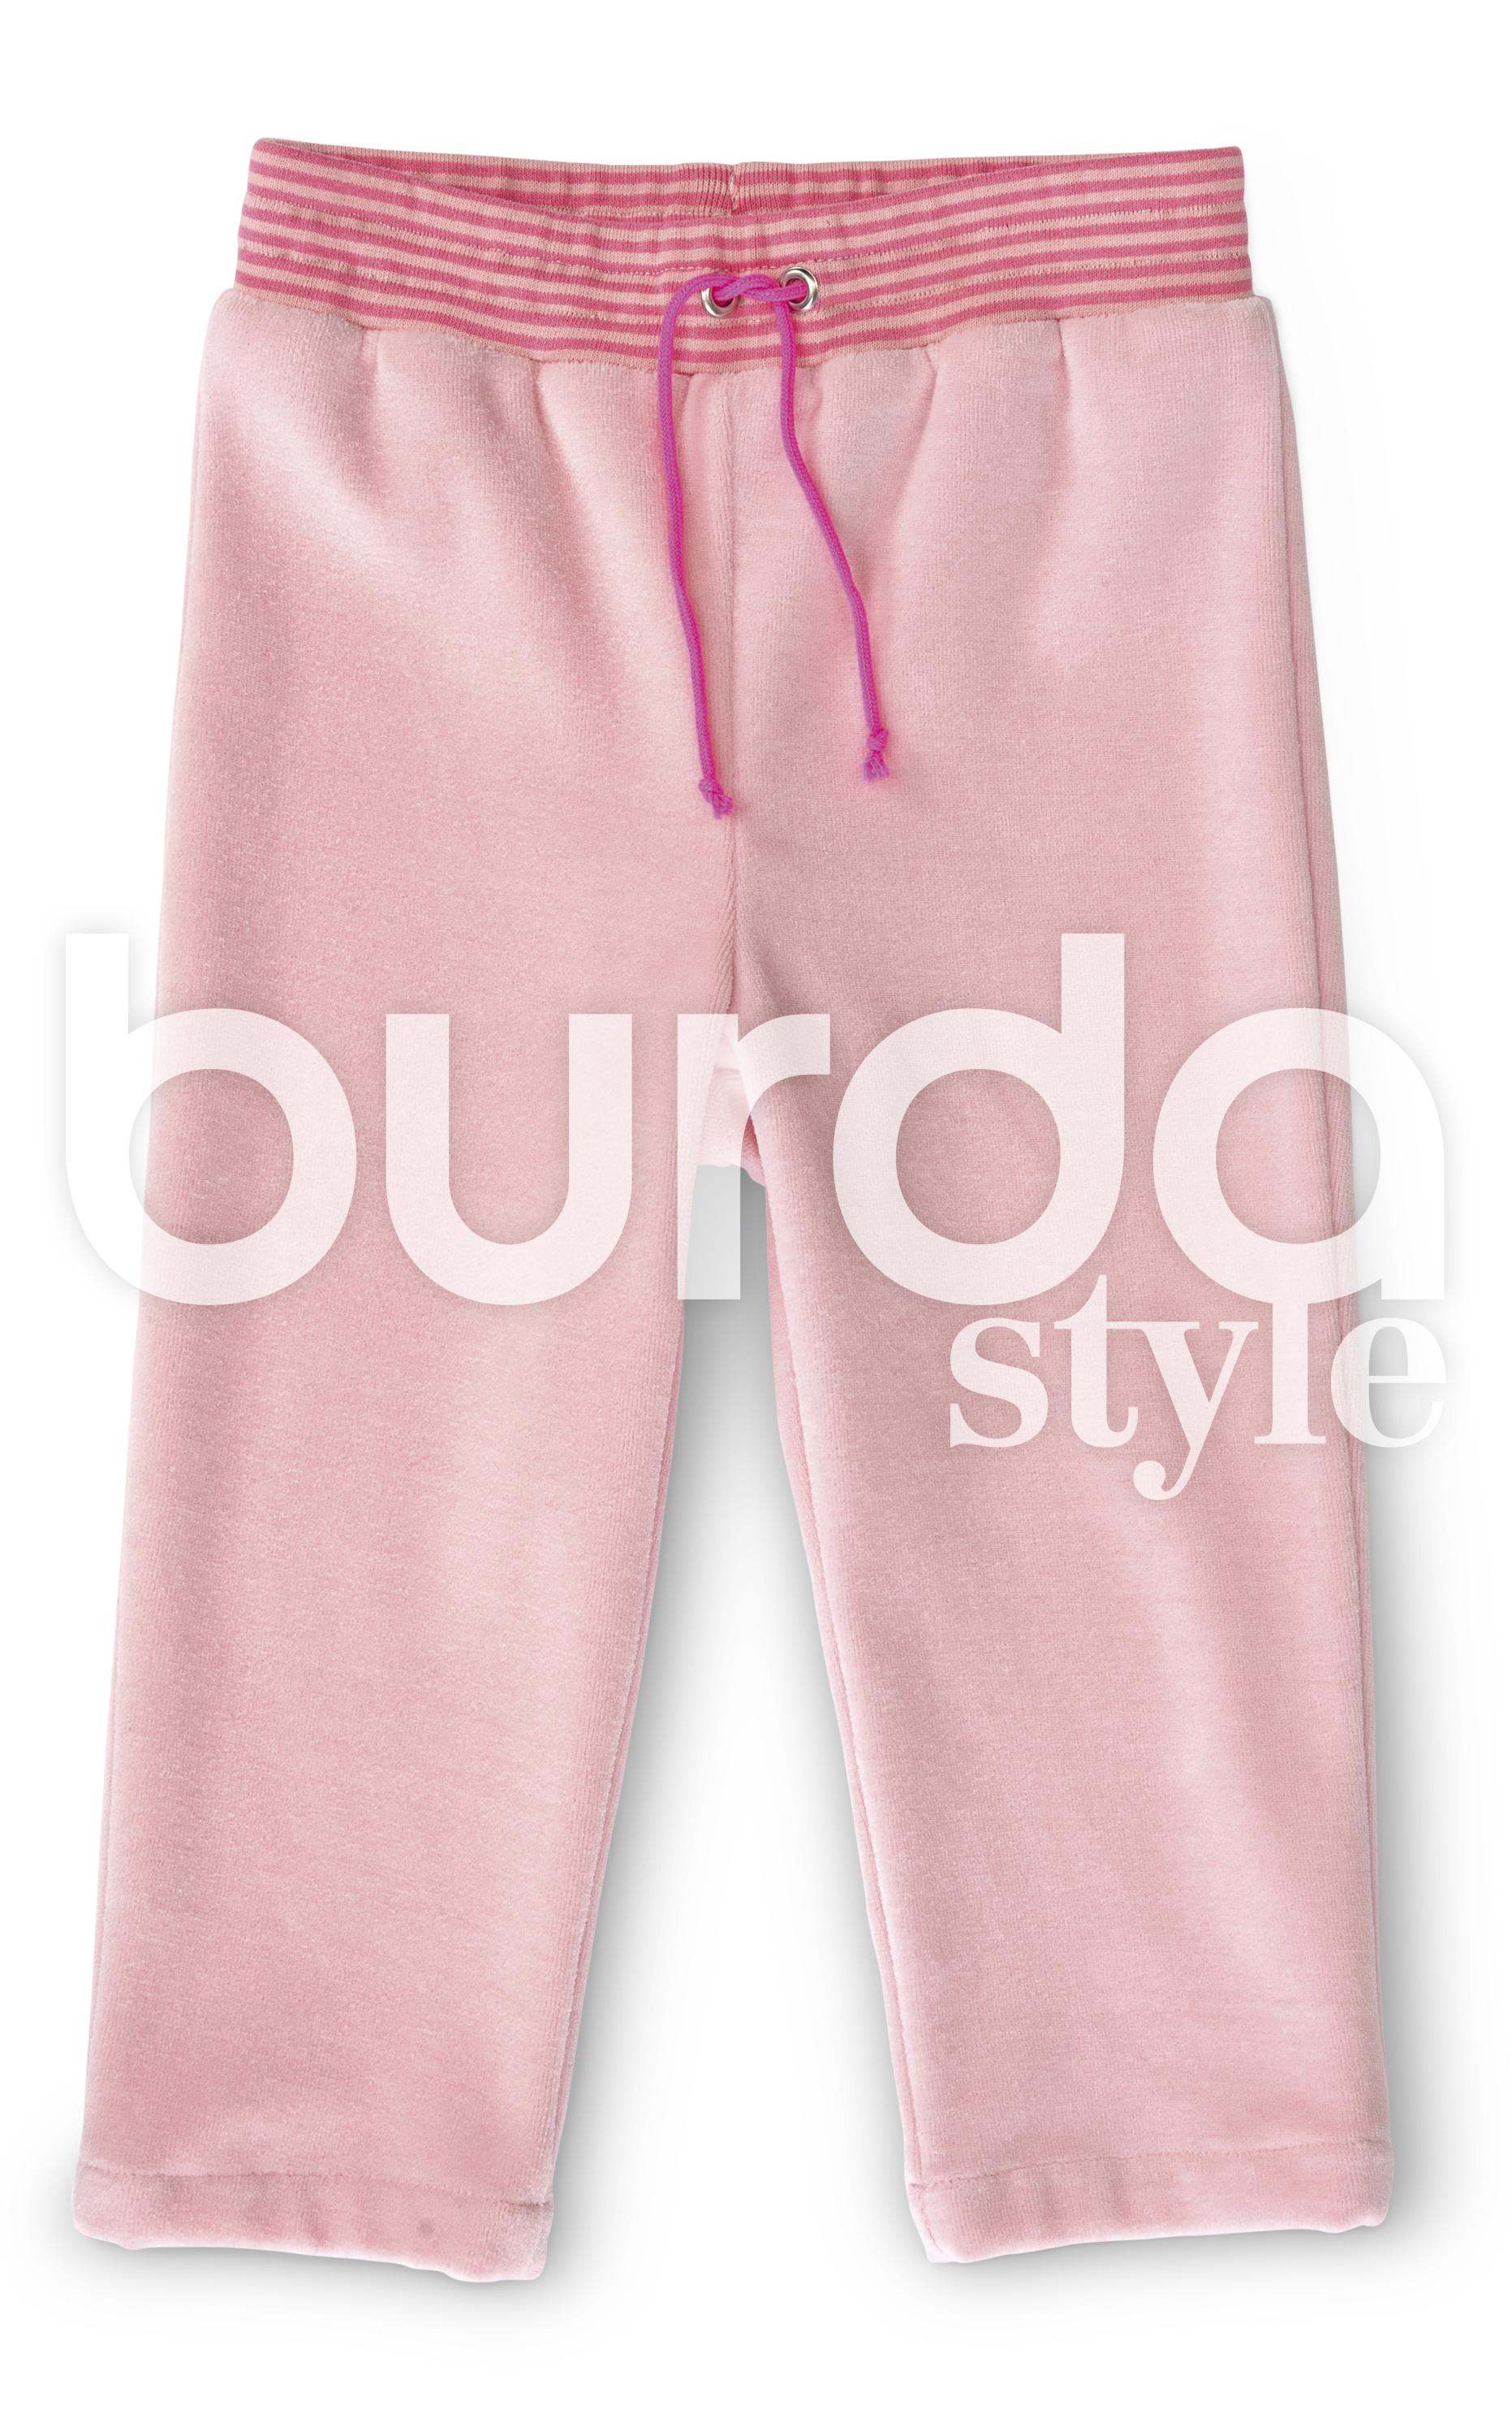 Burda B9349 Baby's Jogging Suit